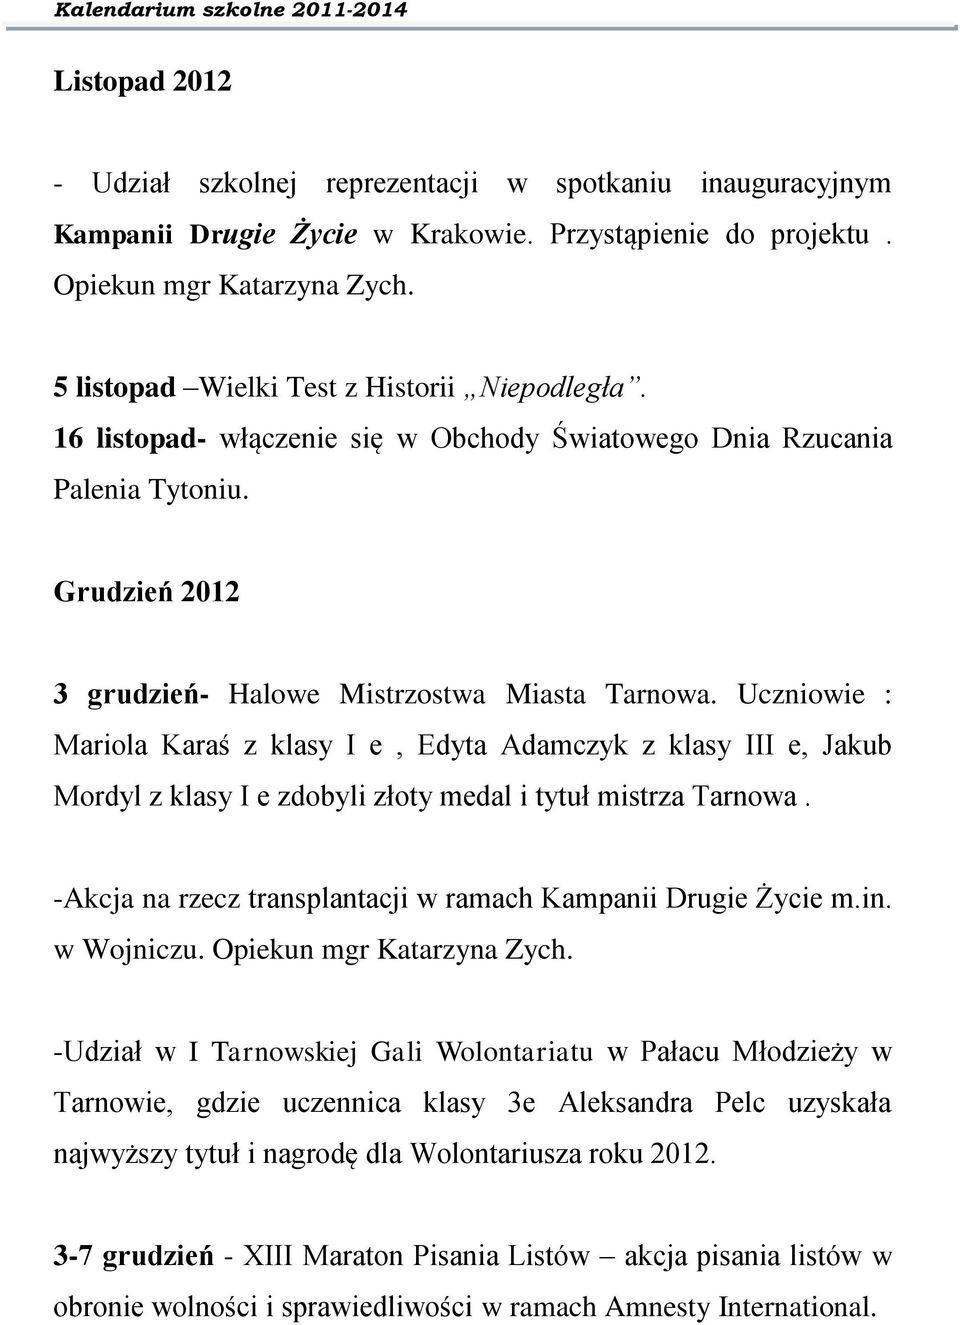 Uczniowie : Mariola Karaś z klasy I e, Edyta Adamczyk z klasy III e, Jakub Mordyl z klasy I e zdobyli złoty medal i tytuł mistrza Tarnowa.